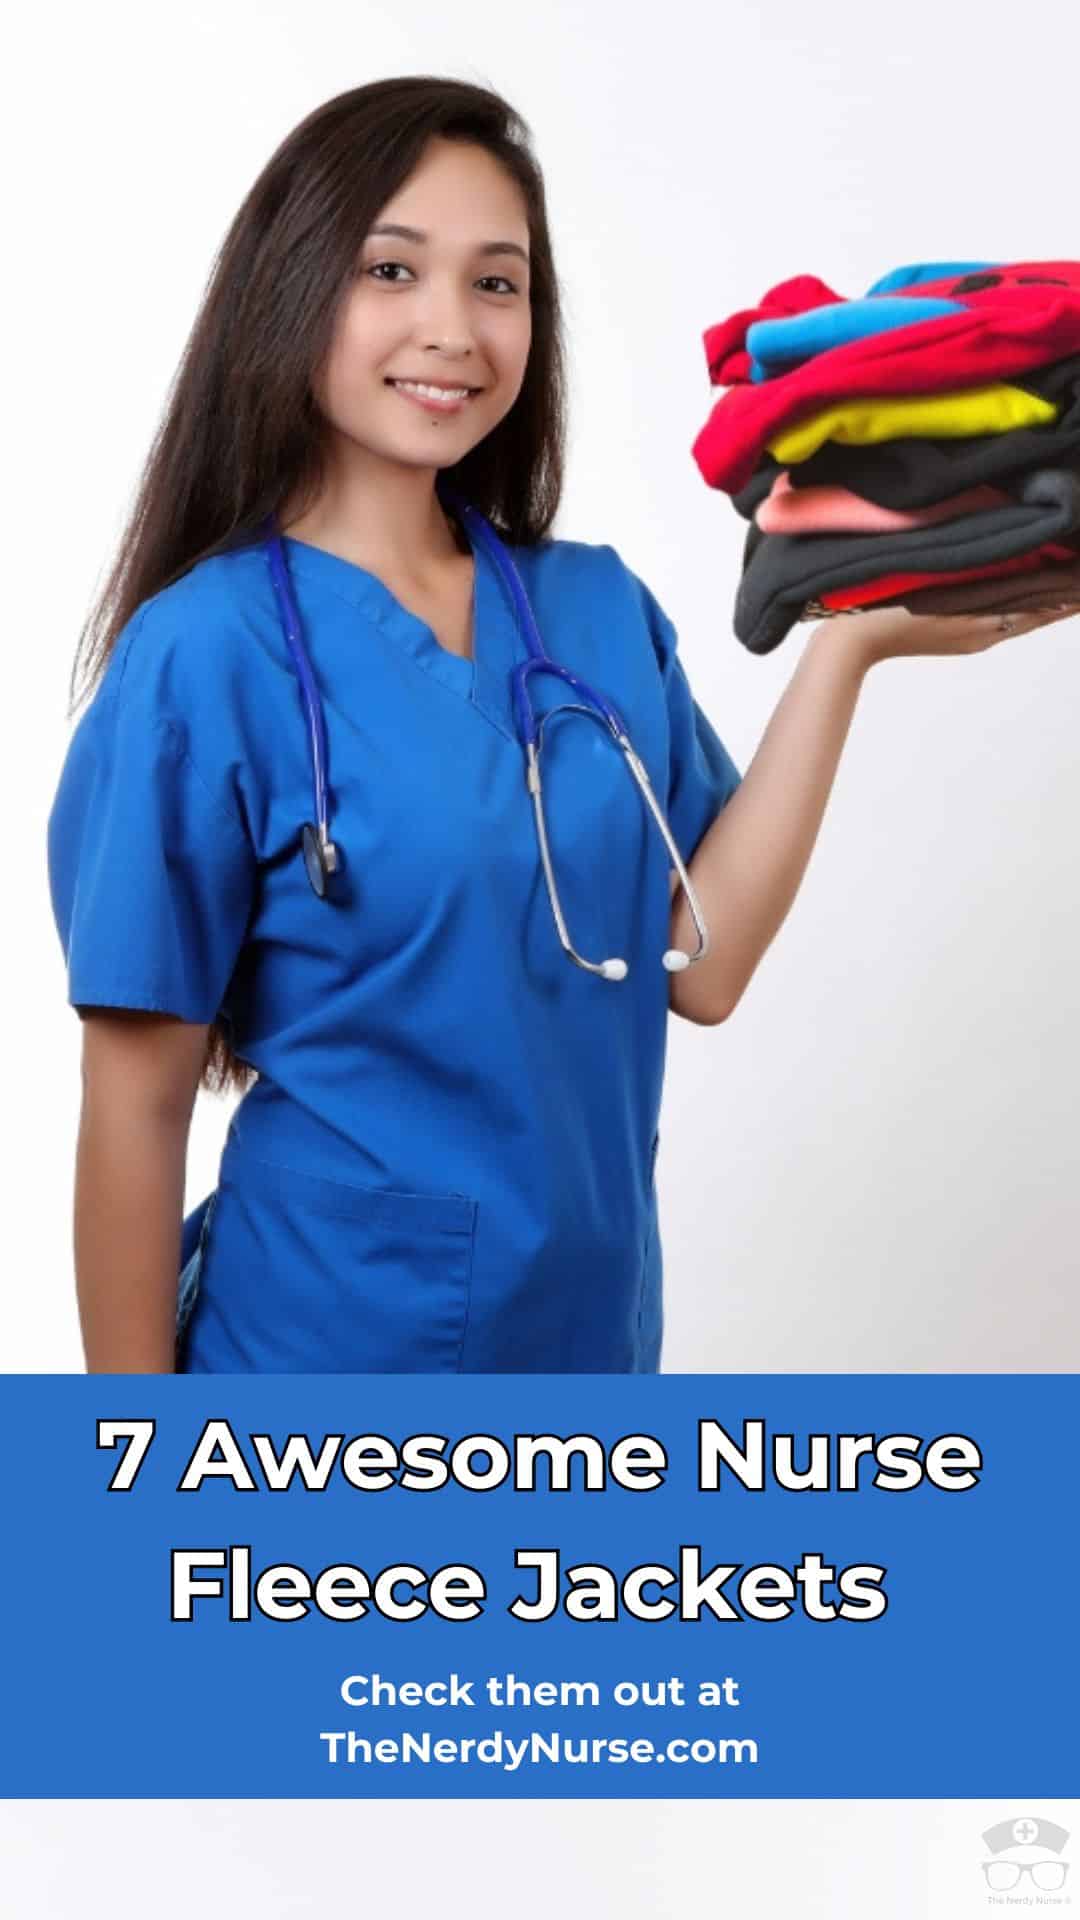 7 Awesome Nurse Fleece Jackets to Keep You Warm and Stylish